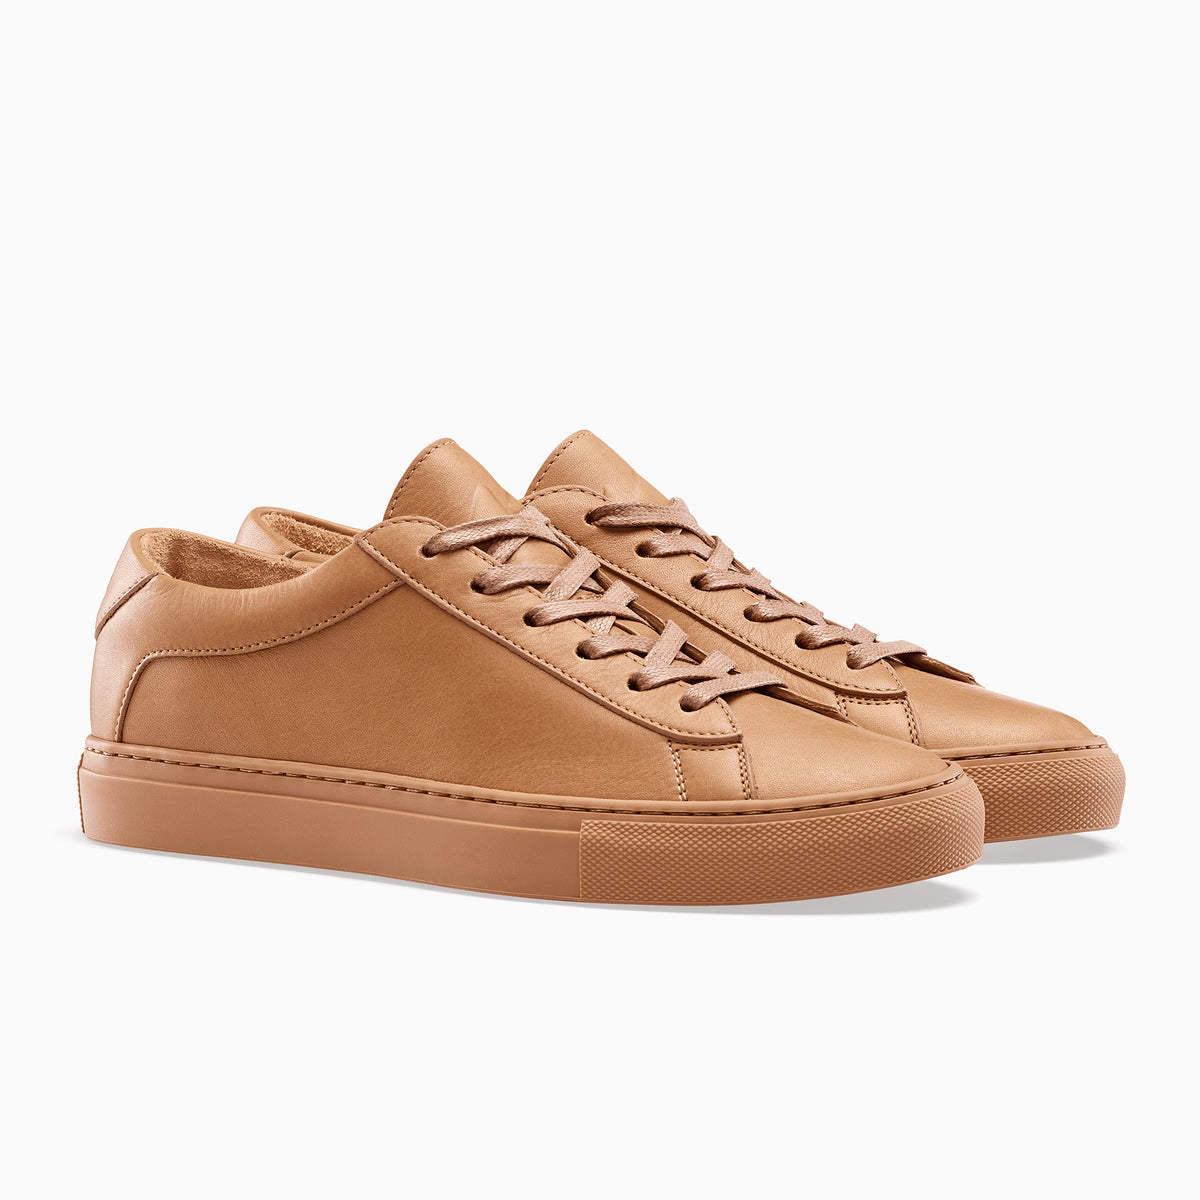 Men's Low Top Leather Sneaker in Brown | Capri Sahara | KOIO